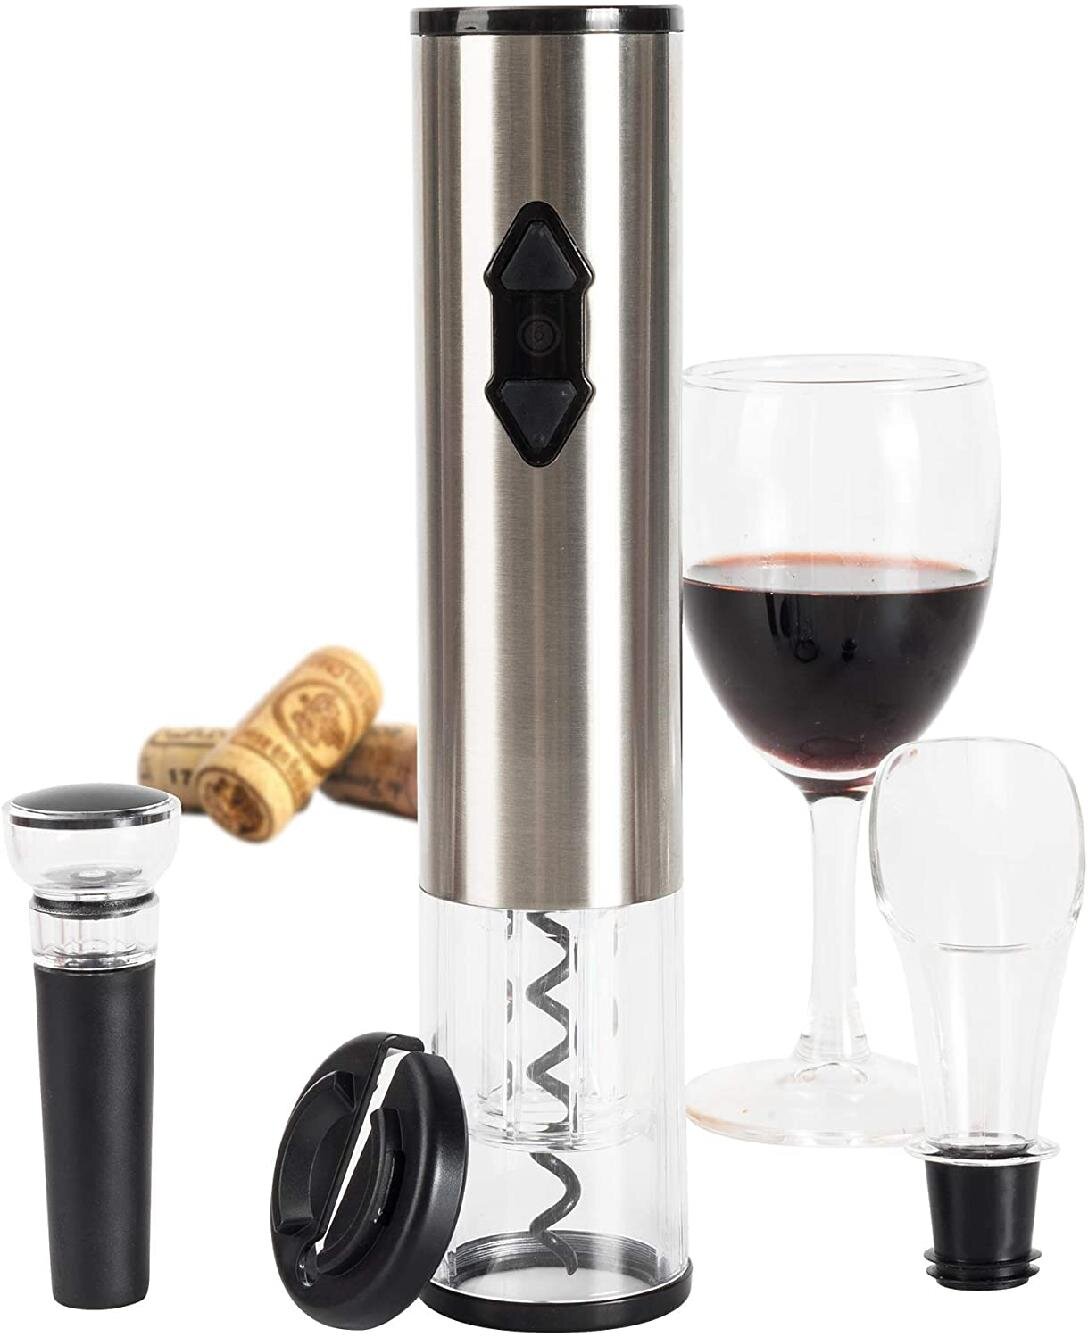 4 in 1 Wine Tool Gift Set Stainless Steel Bottle Opener Corkscrew Stopper Pourer 